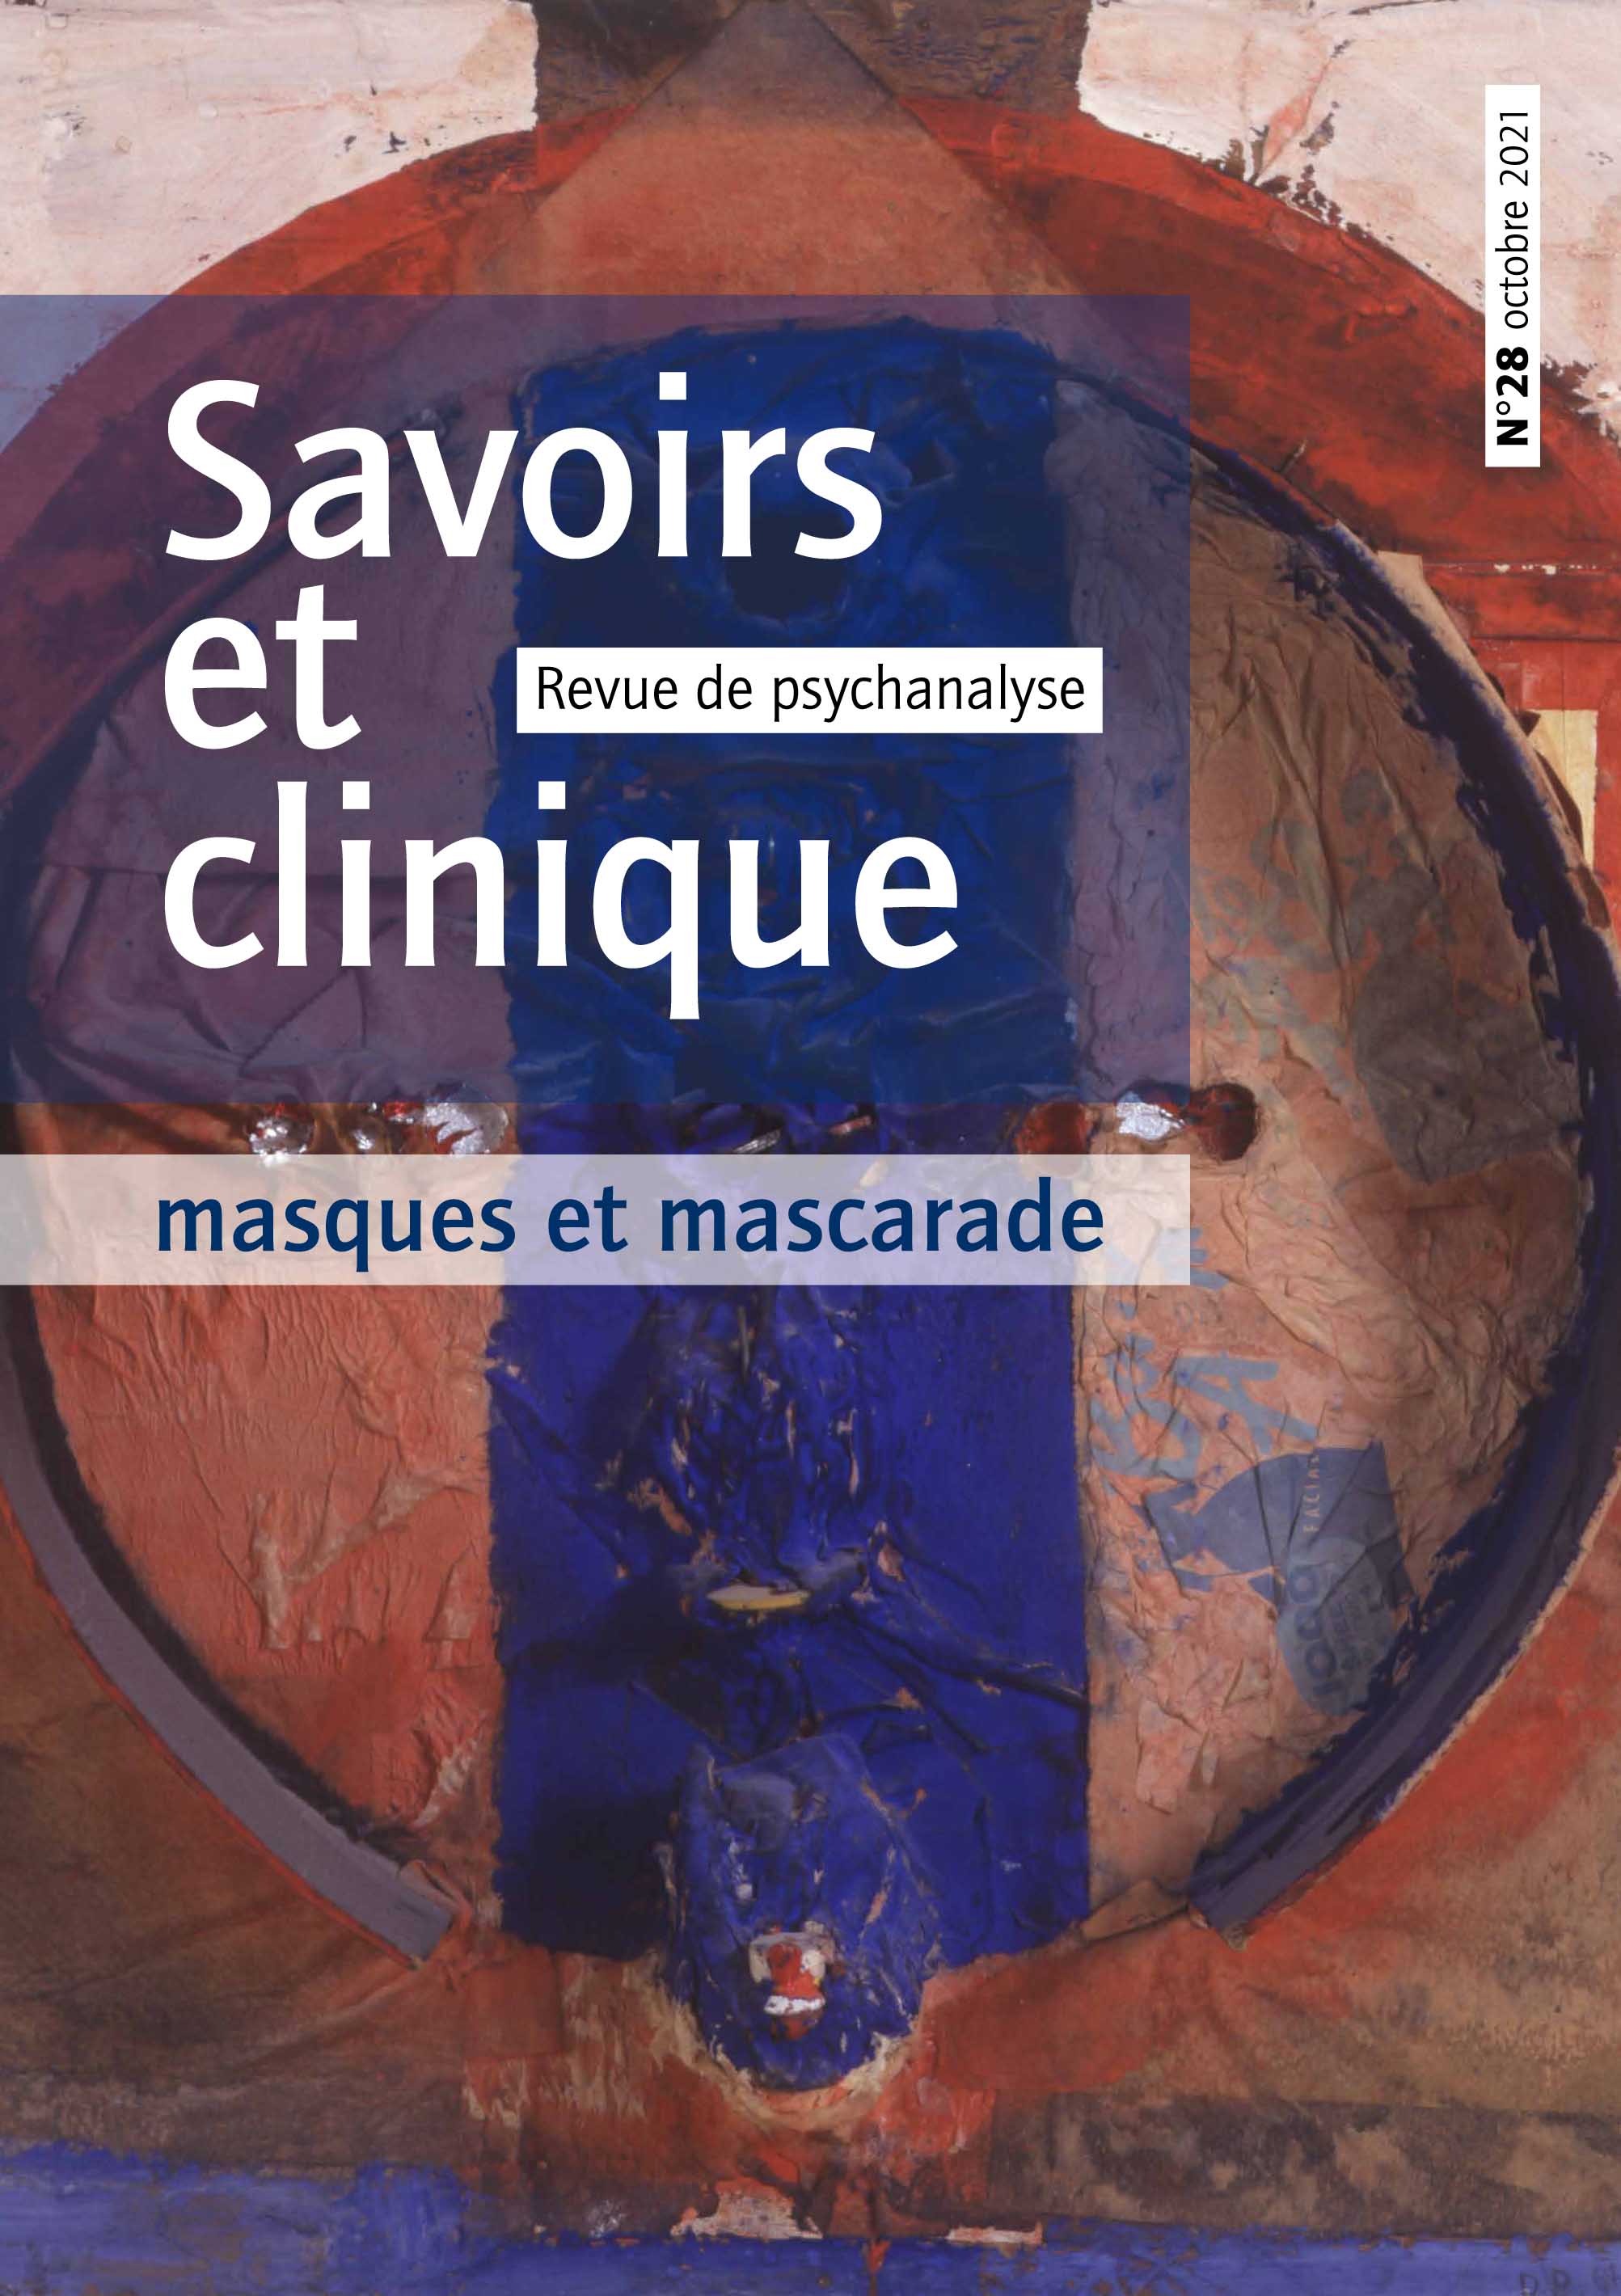  Savoirs et clinique. Dossier « Masques et mascarade »